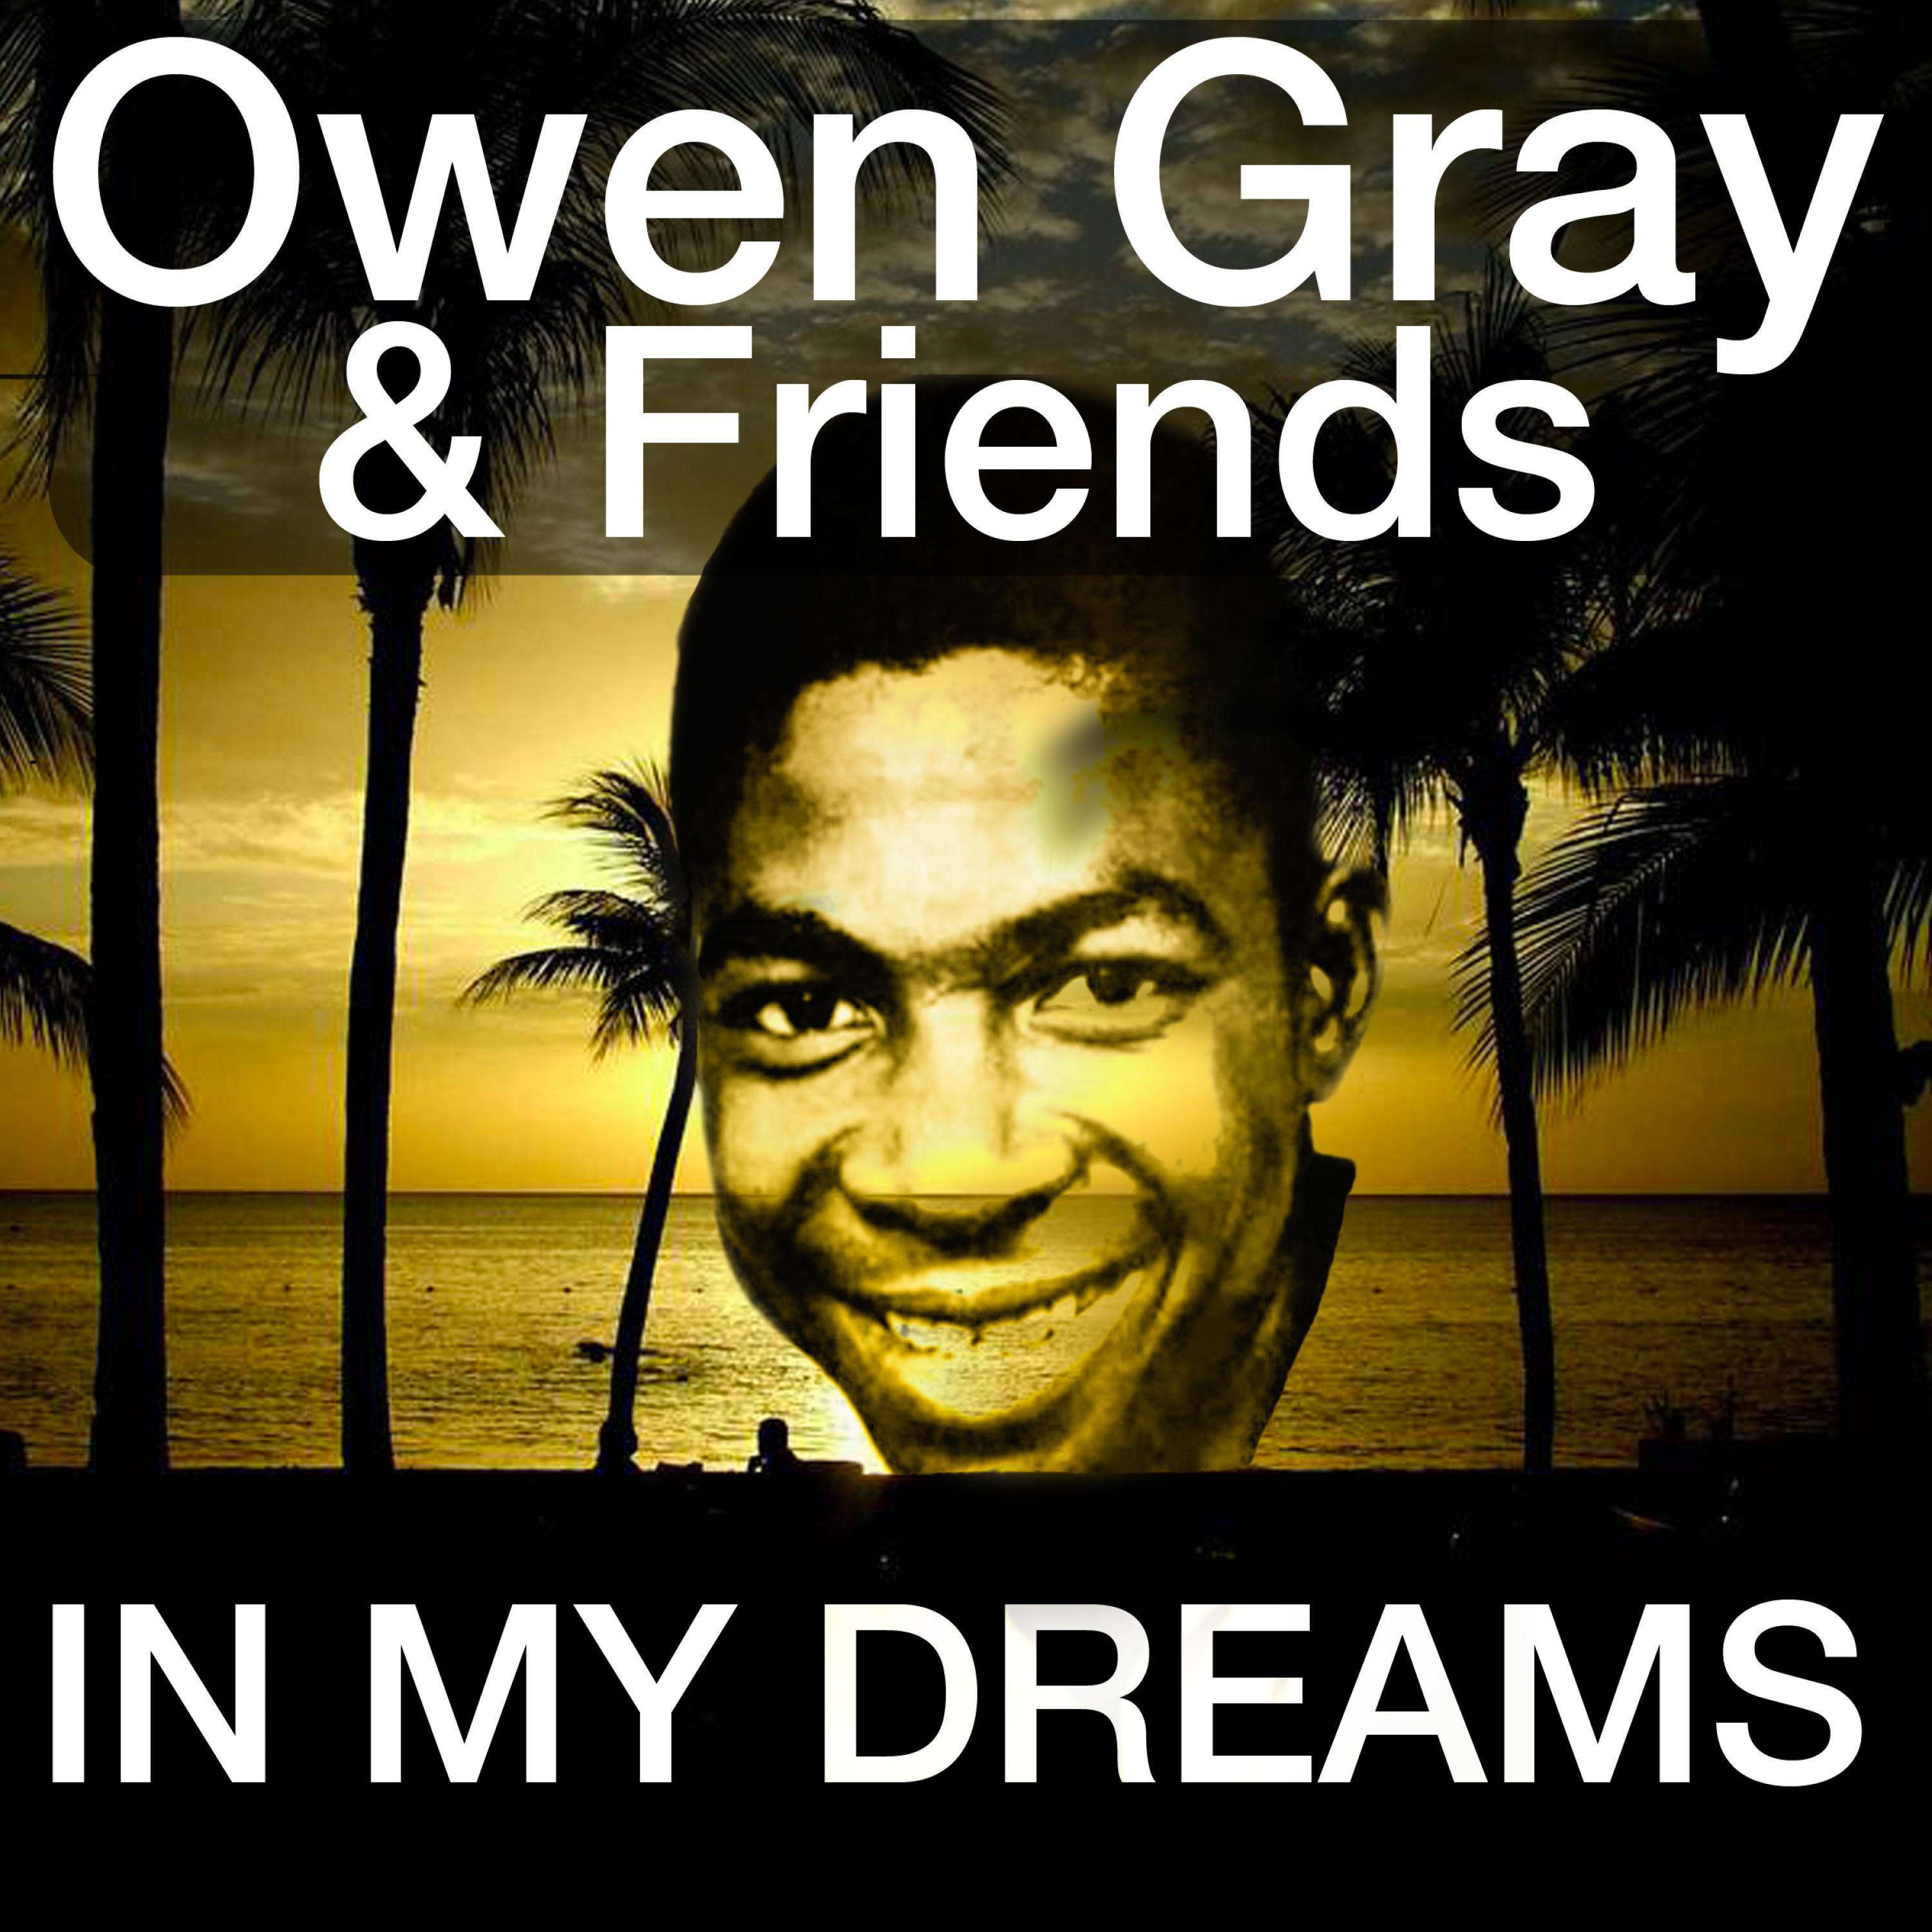 歌手:owen gray 所属专辑:in my dreams 播放 收藏 分享 下载 评论